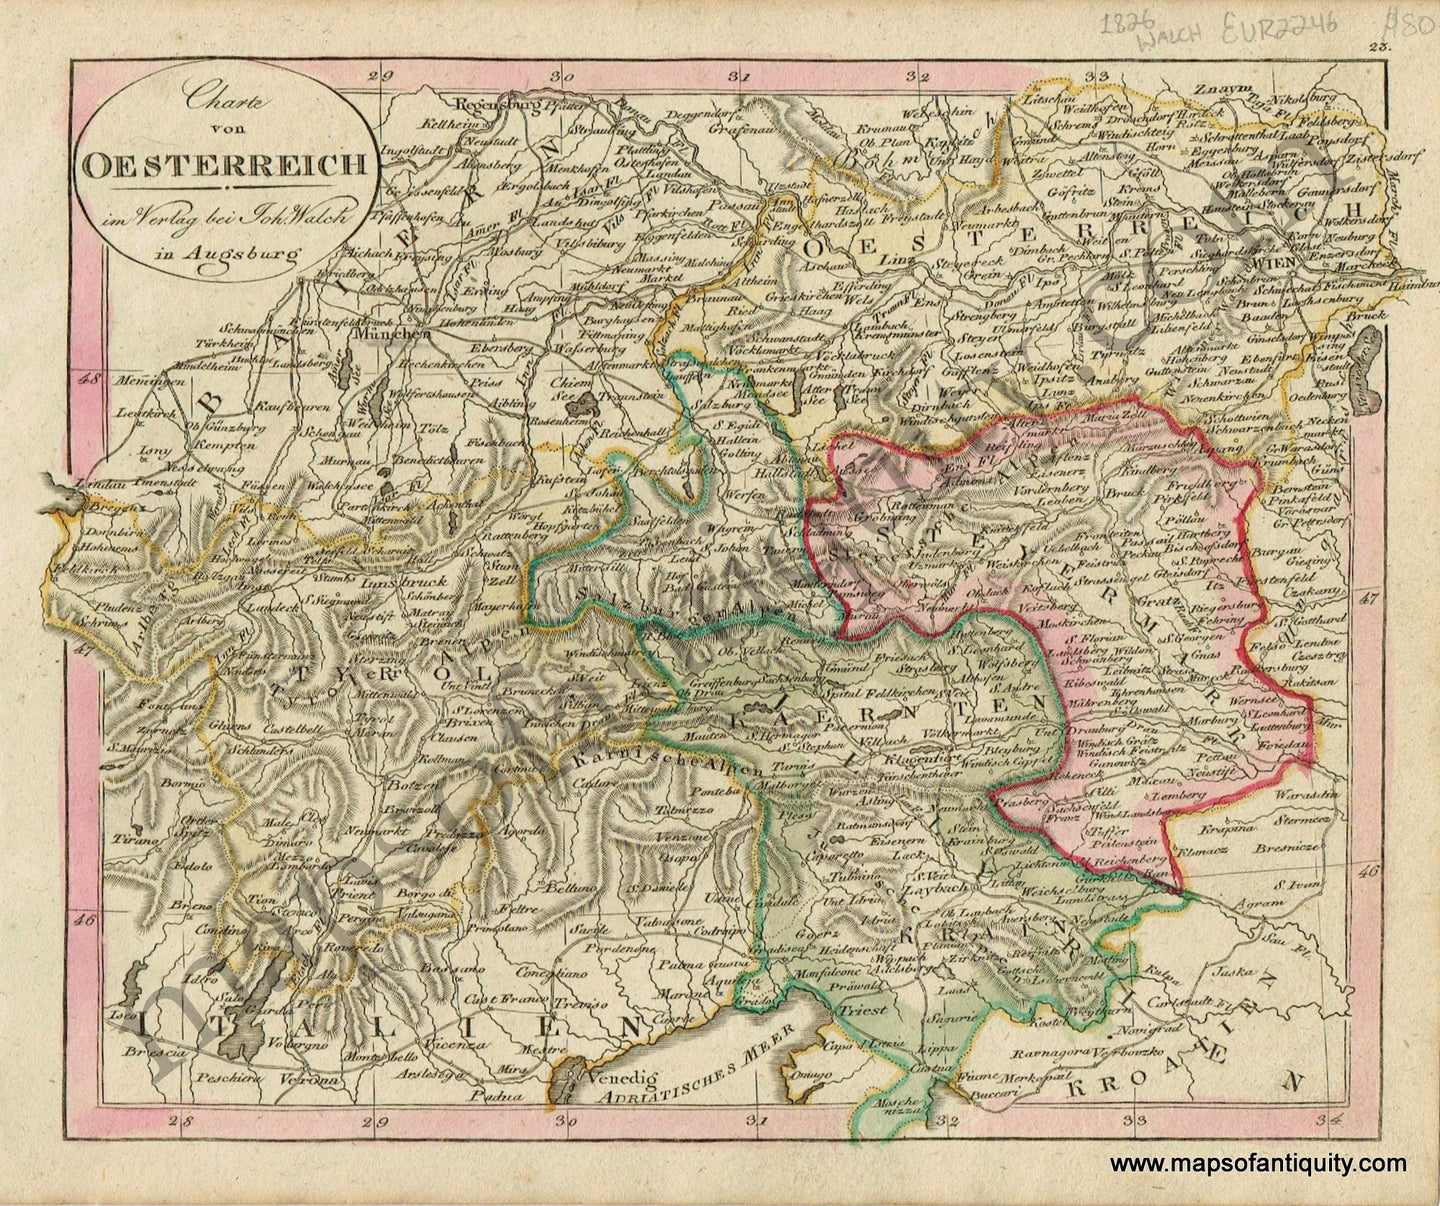 Antique-Map-Charte-von-Oesterreich-Austria-Austrian-German-Walch-Neuester-Schul-Atlass-1826-1820s-Early-19th-Century-Maps-of-Antiquity